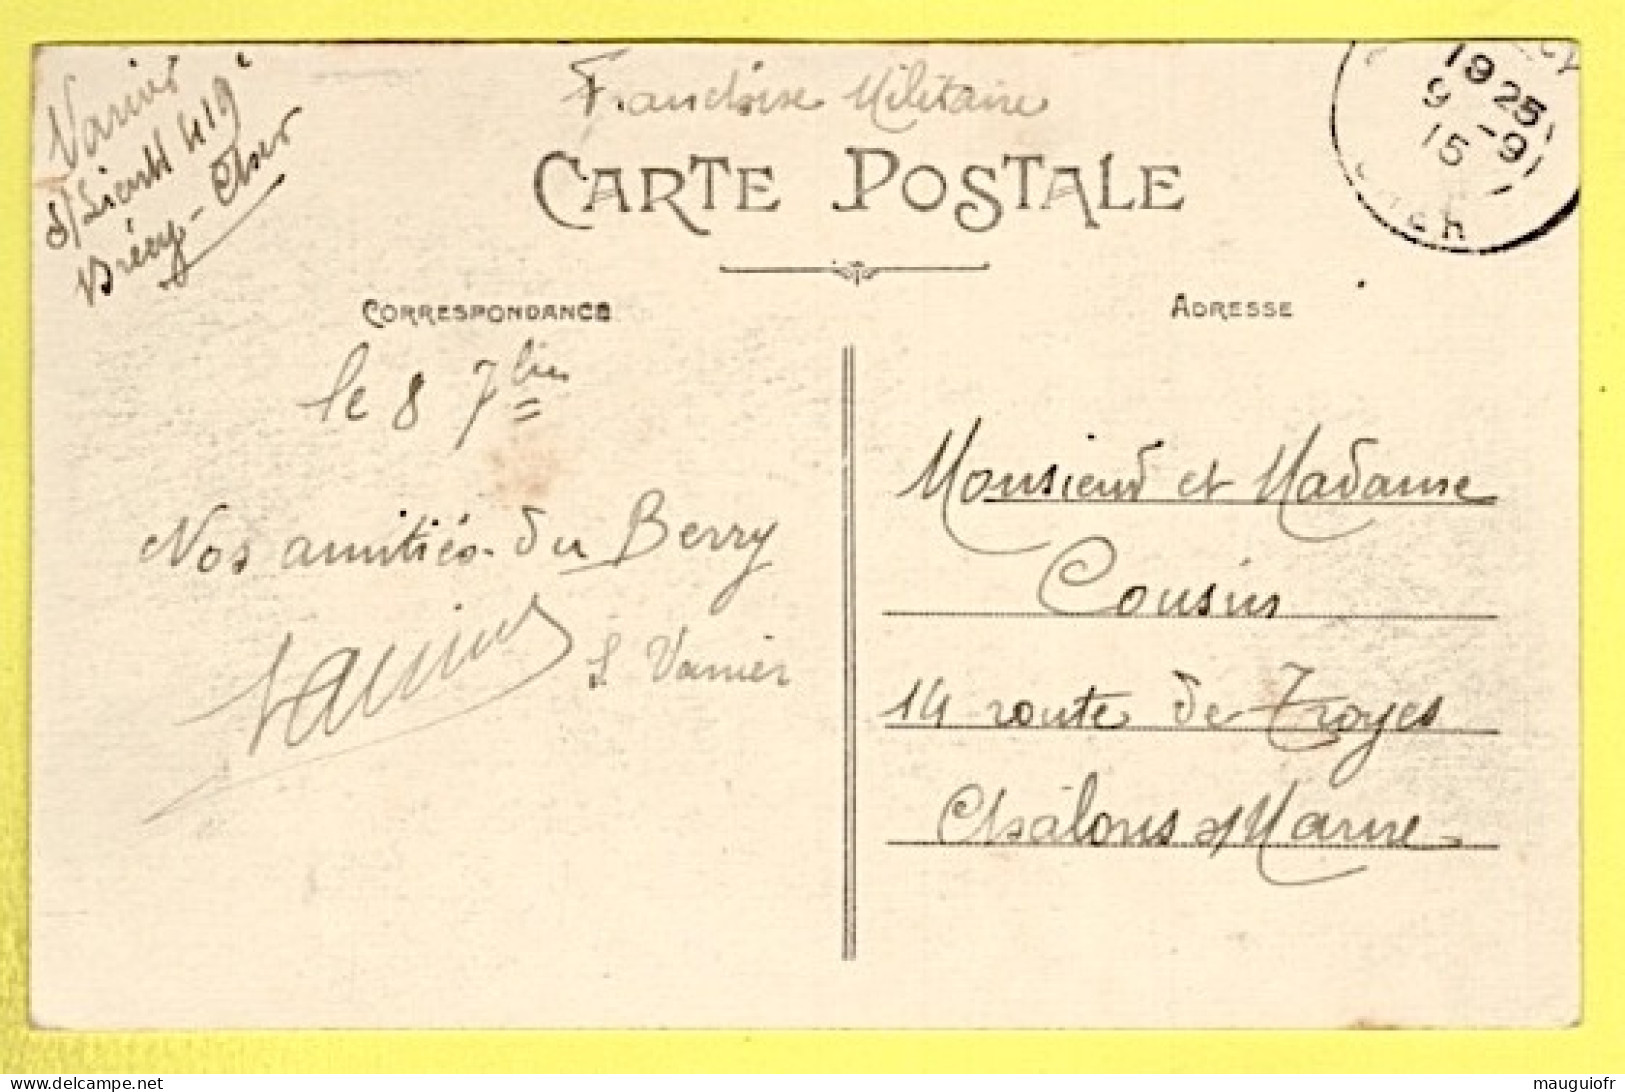 FOLKLORE / COSTUMES ET MUSIQUE / AU BERRY, LE JOUEUR DE MUSETTE LORS D'UN BAPTÊME / 1915 - Danses